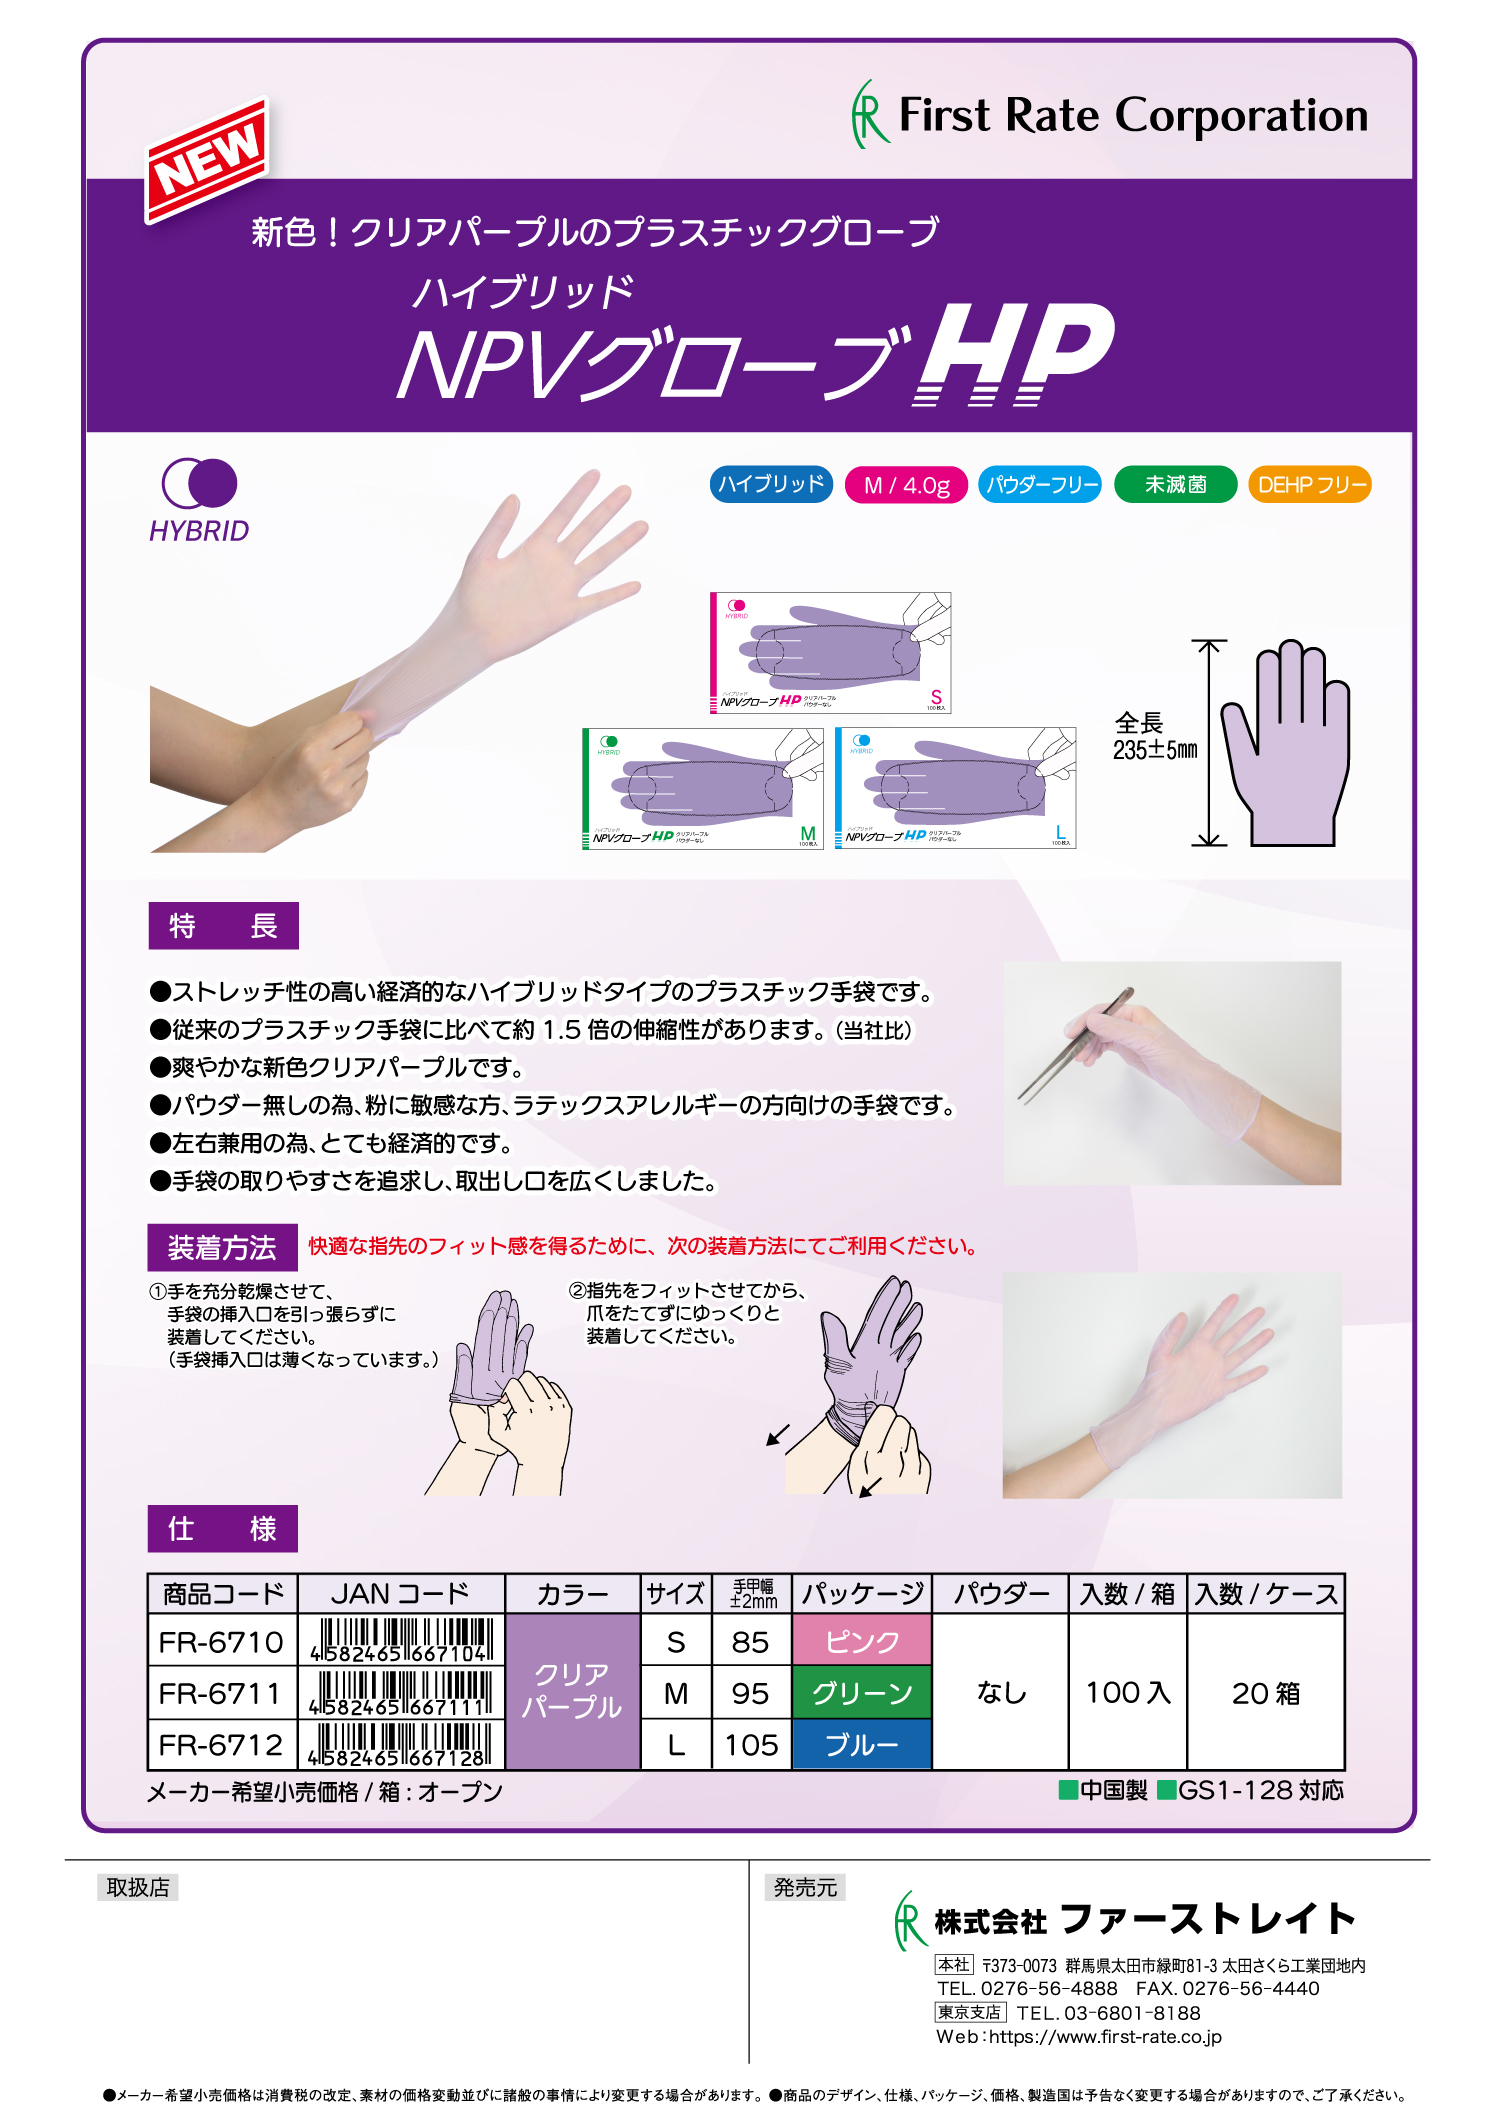 <strong>伸縮率の高いハイブリッドプラスチック手袋 「ハイブリッドNPVグローブHP」7/17発売開始 </strong>